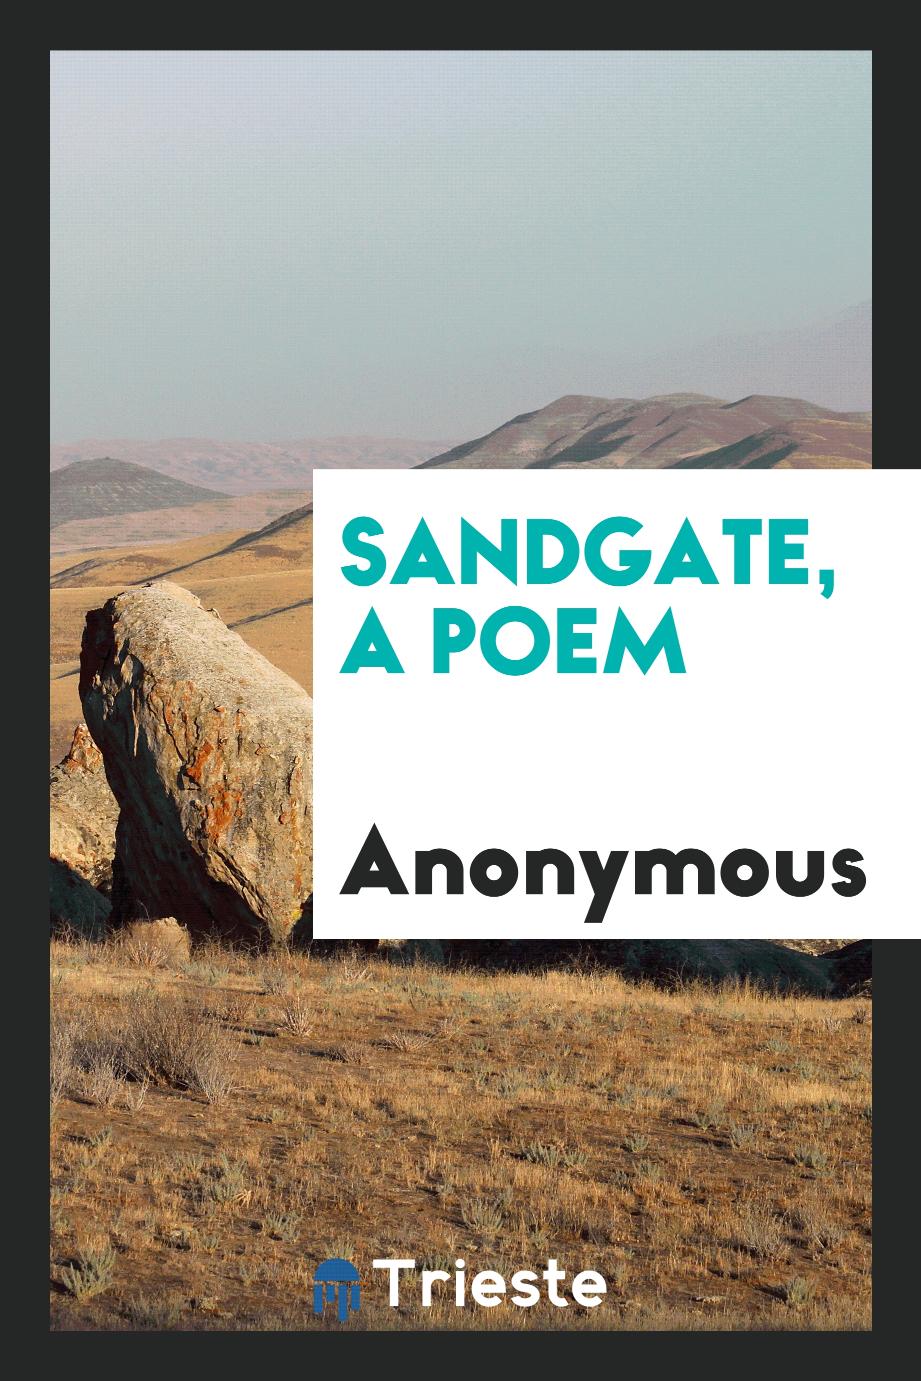 Sandgate, a poem